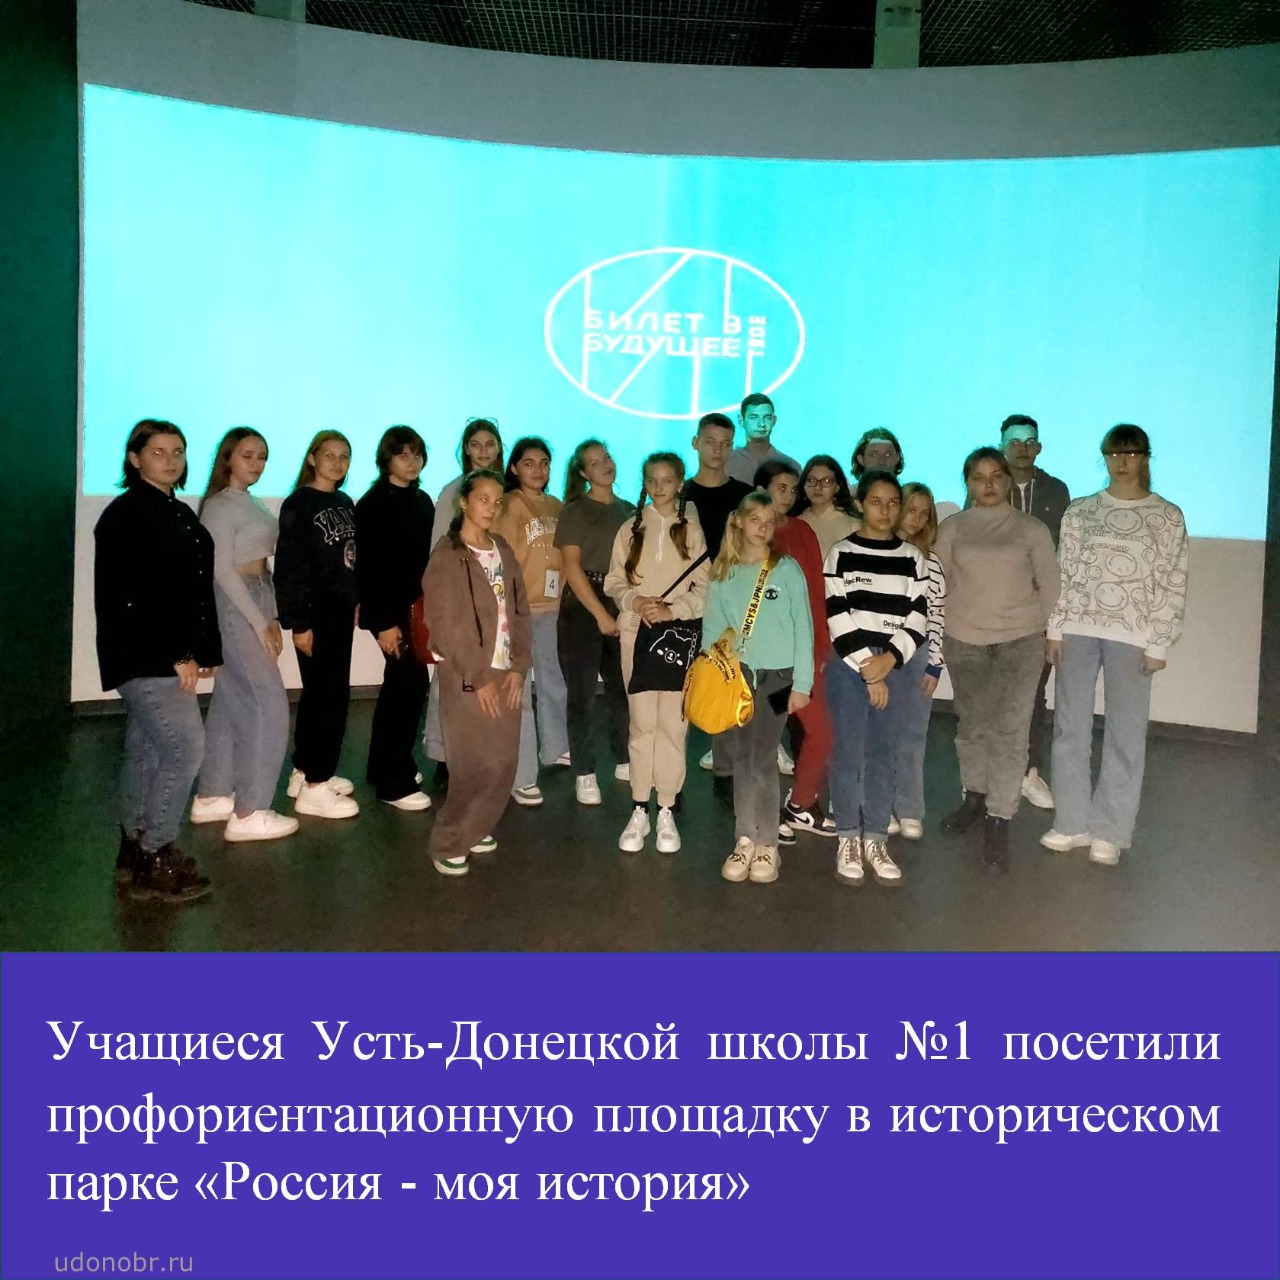 Учащиеся Усть-Донецкой школы №1 посетили профориентационную площадку в историческом парке